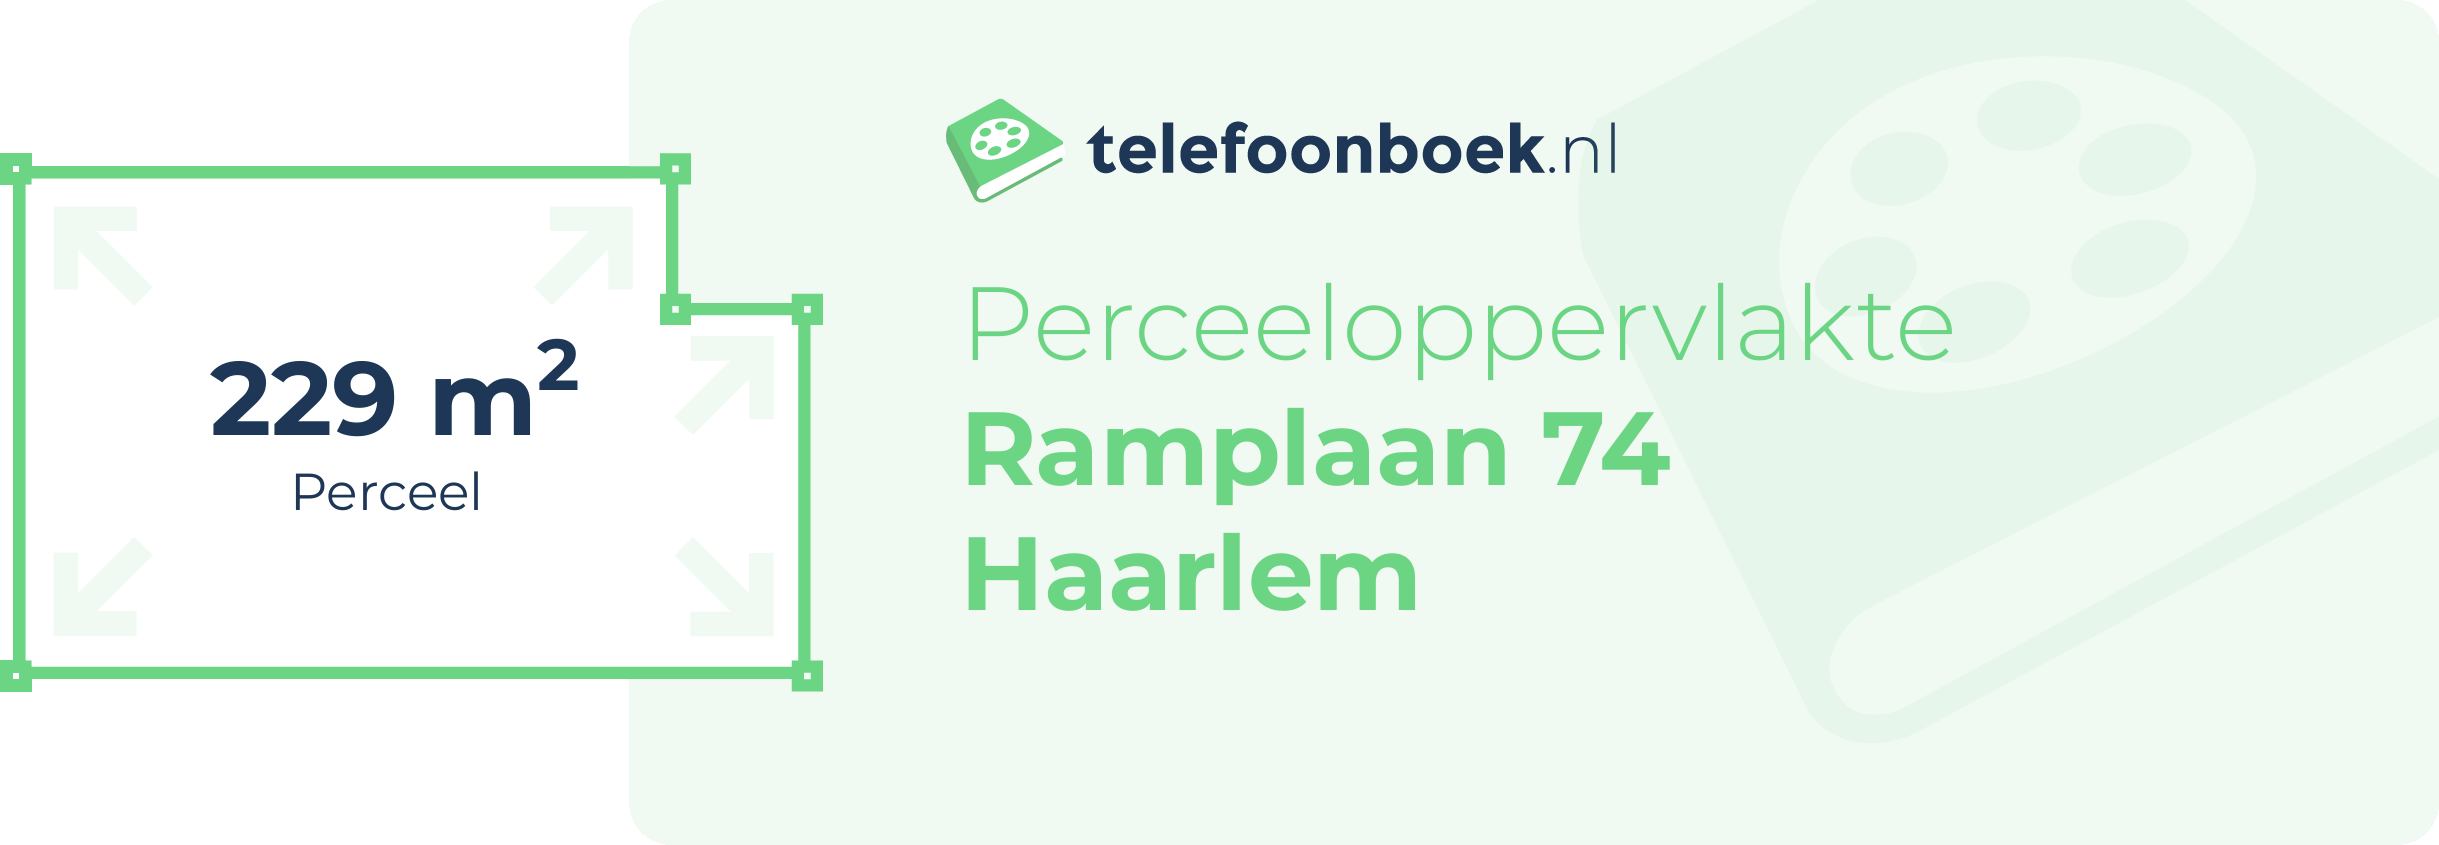 Perceeloppervlakte Ramplaan 74 Haarlem